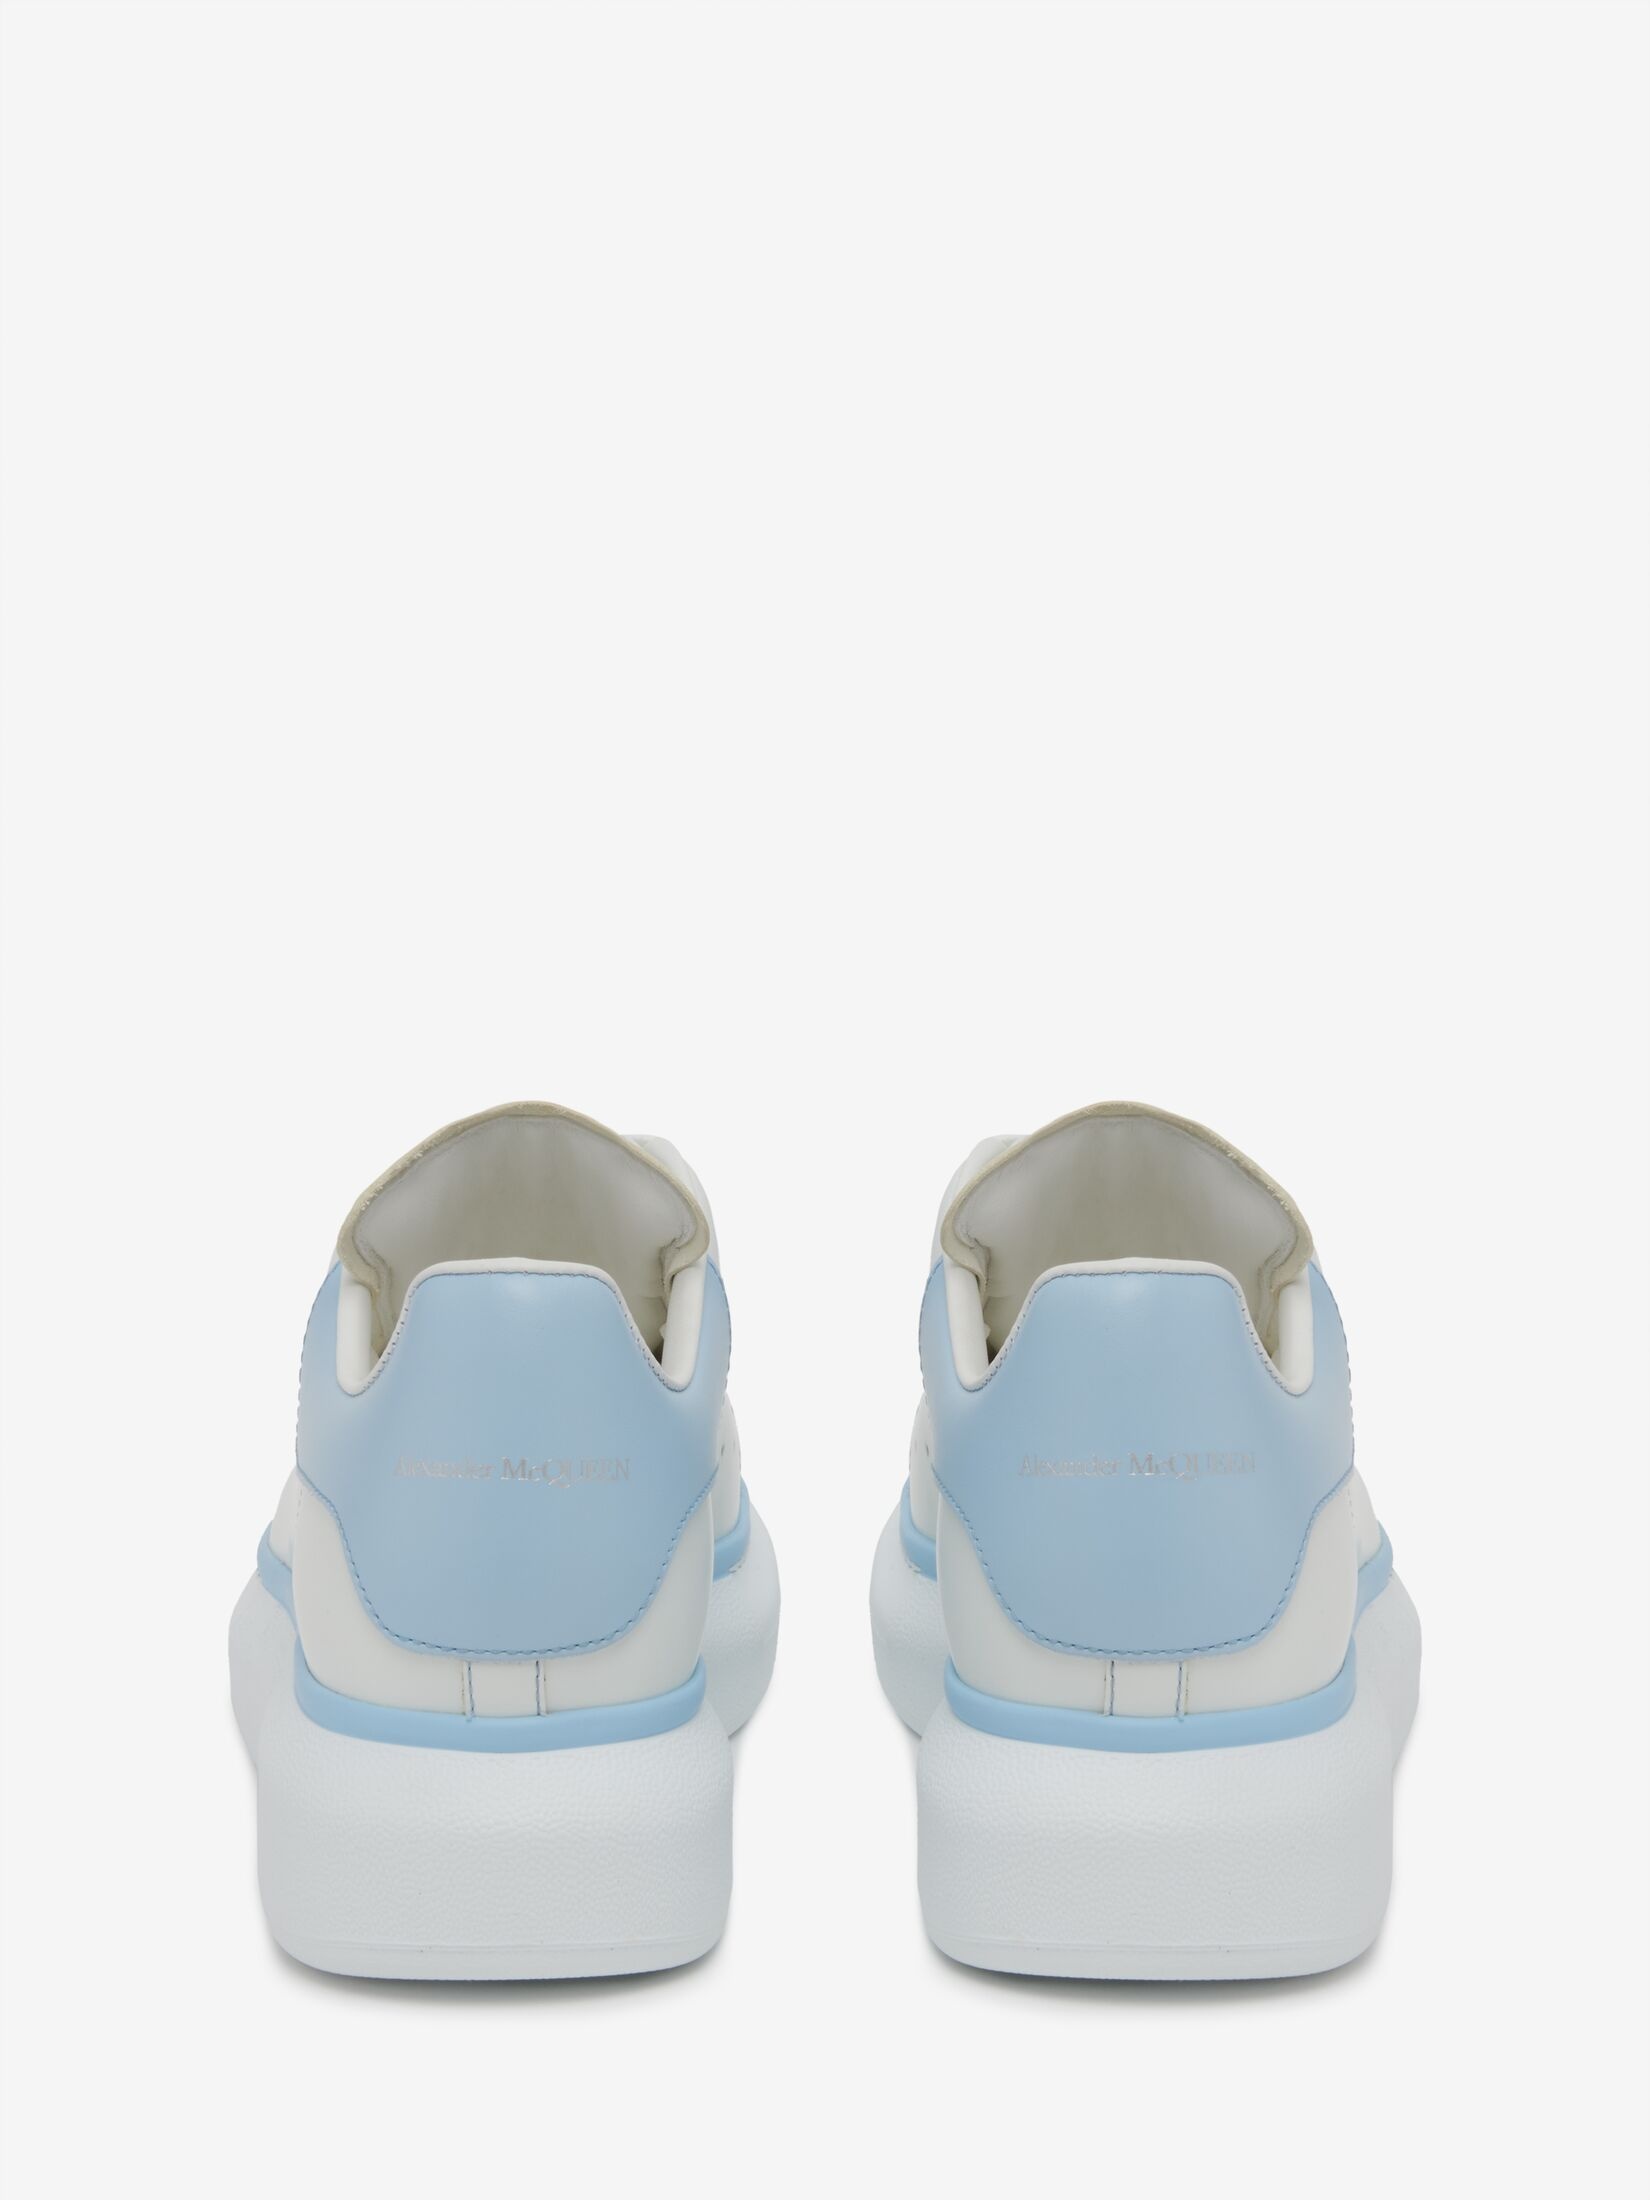 Women's Oversized Sneaker in White/powder Blue - 3